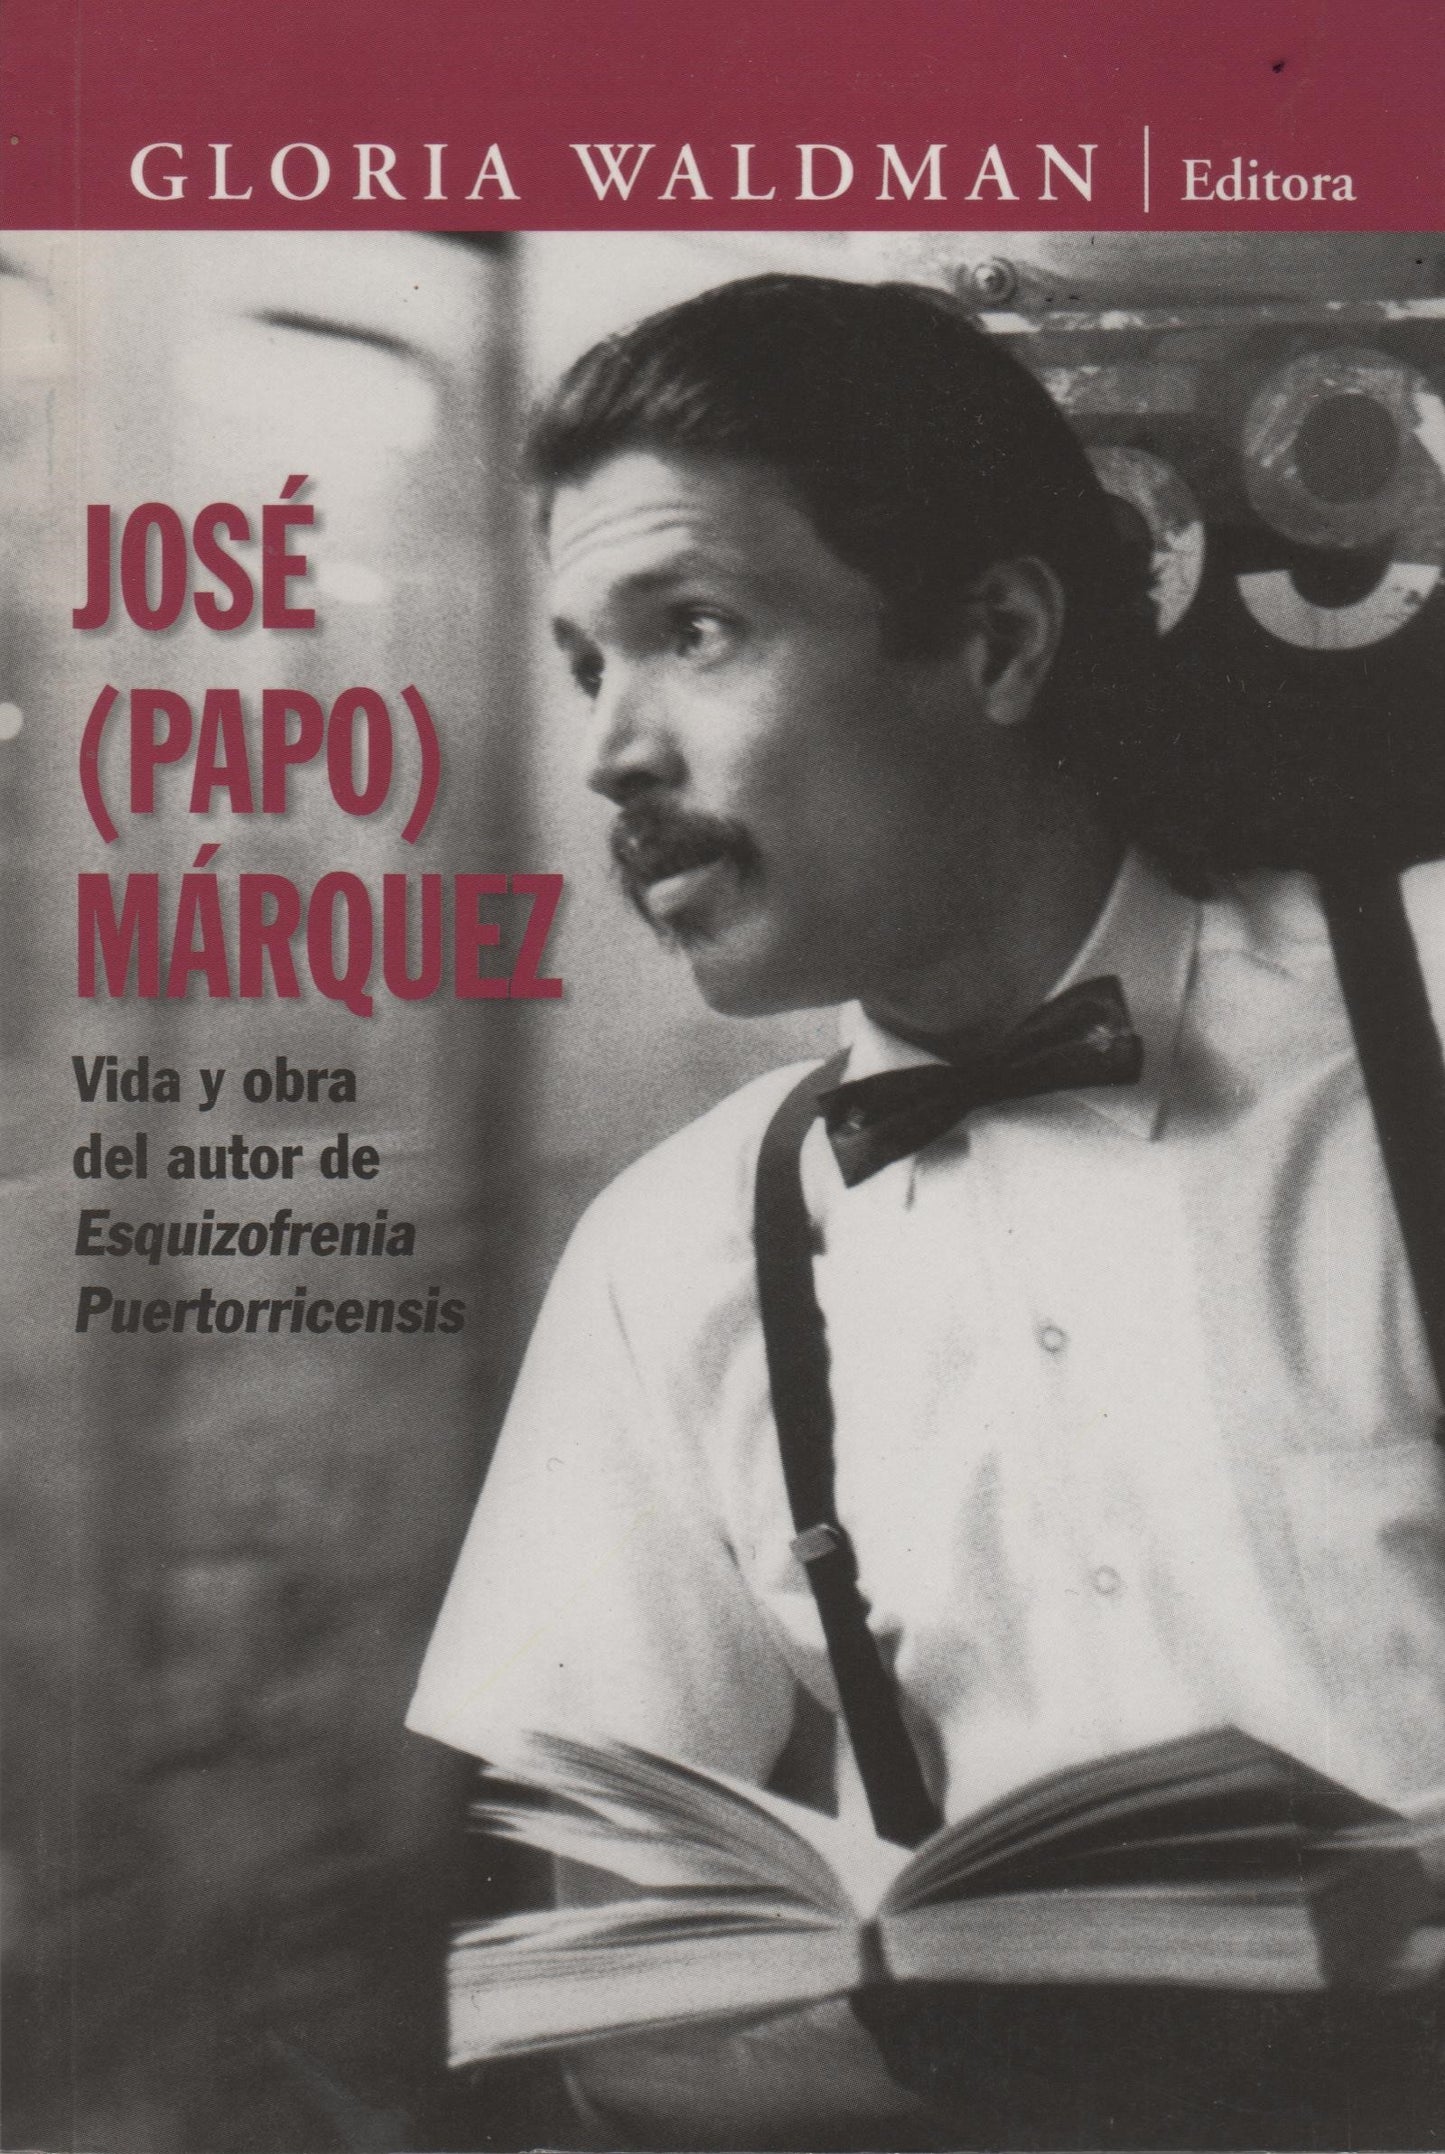 José (Papo) Márquez: Vida y obra del autor de Esquizofrenia Puertorricensis